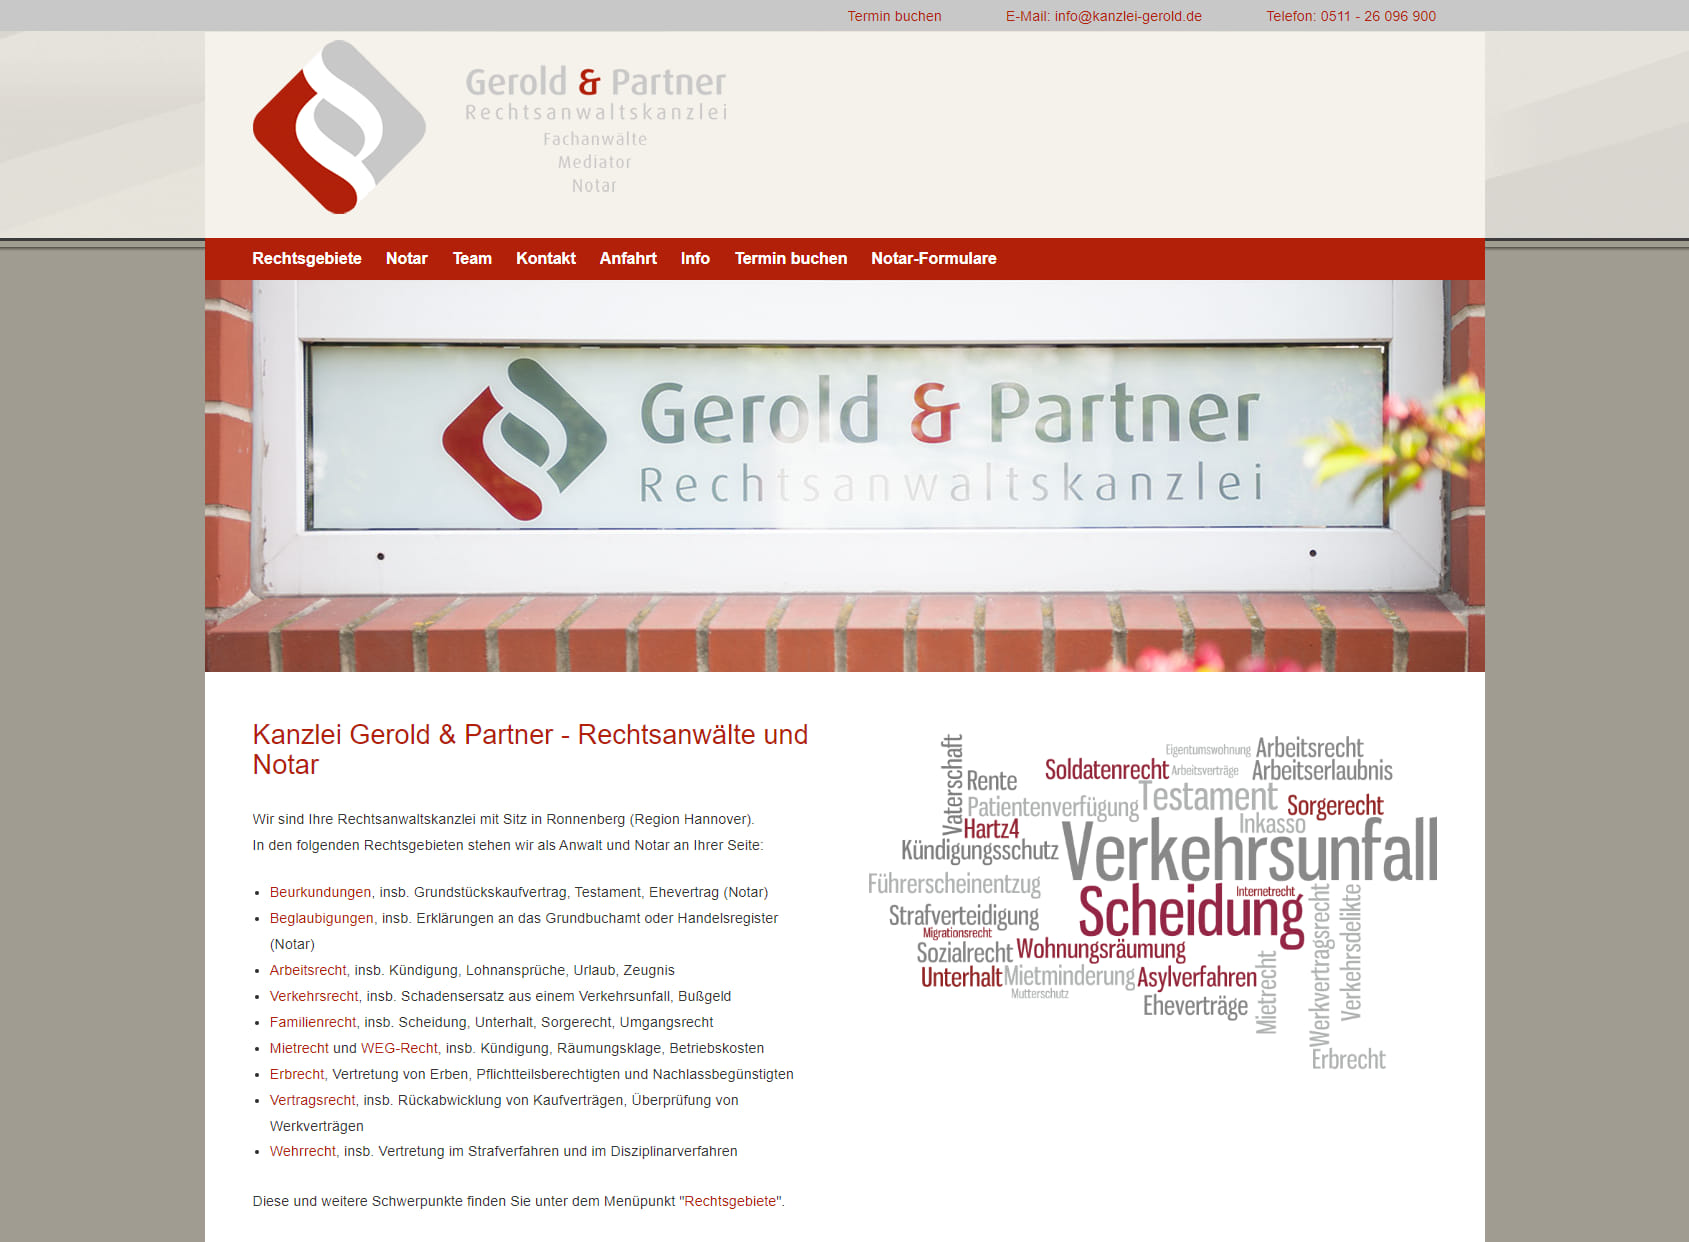 Kanzlei Gerold & Partner - Rechtsanwälte und Notar